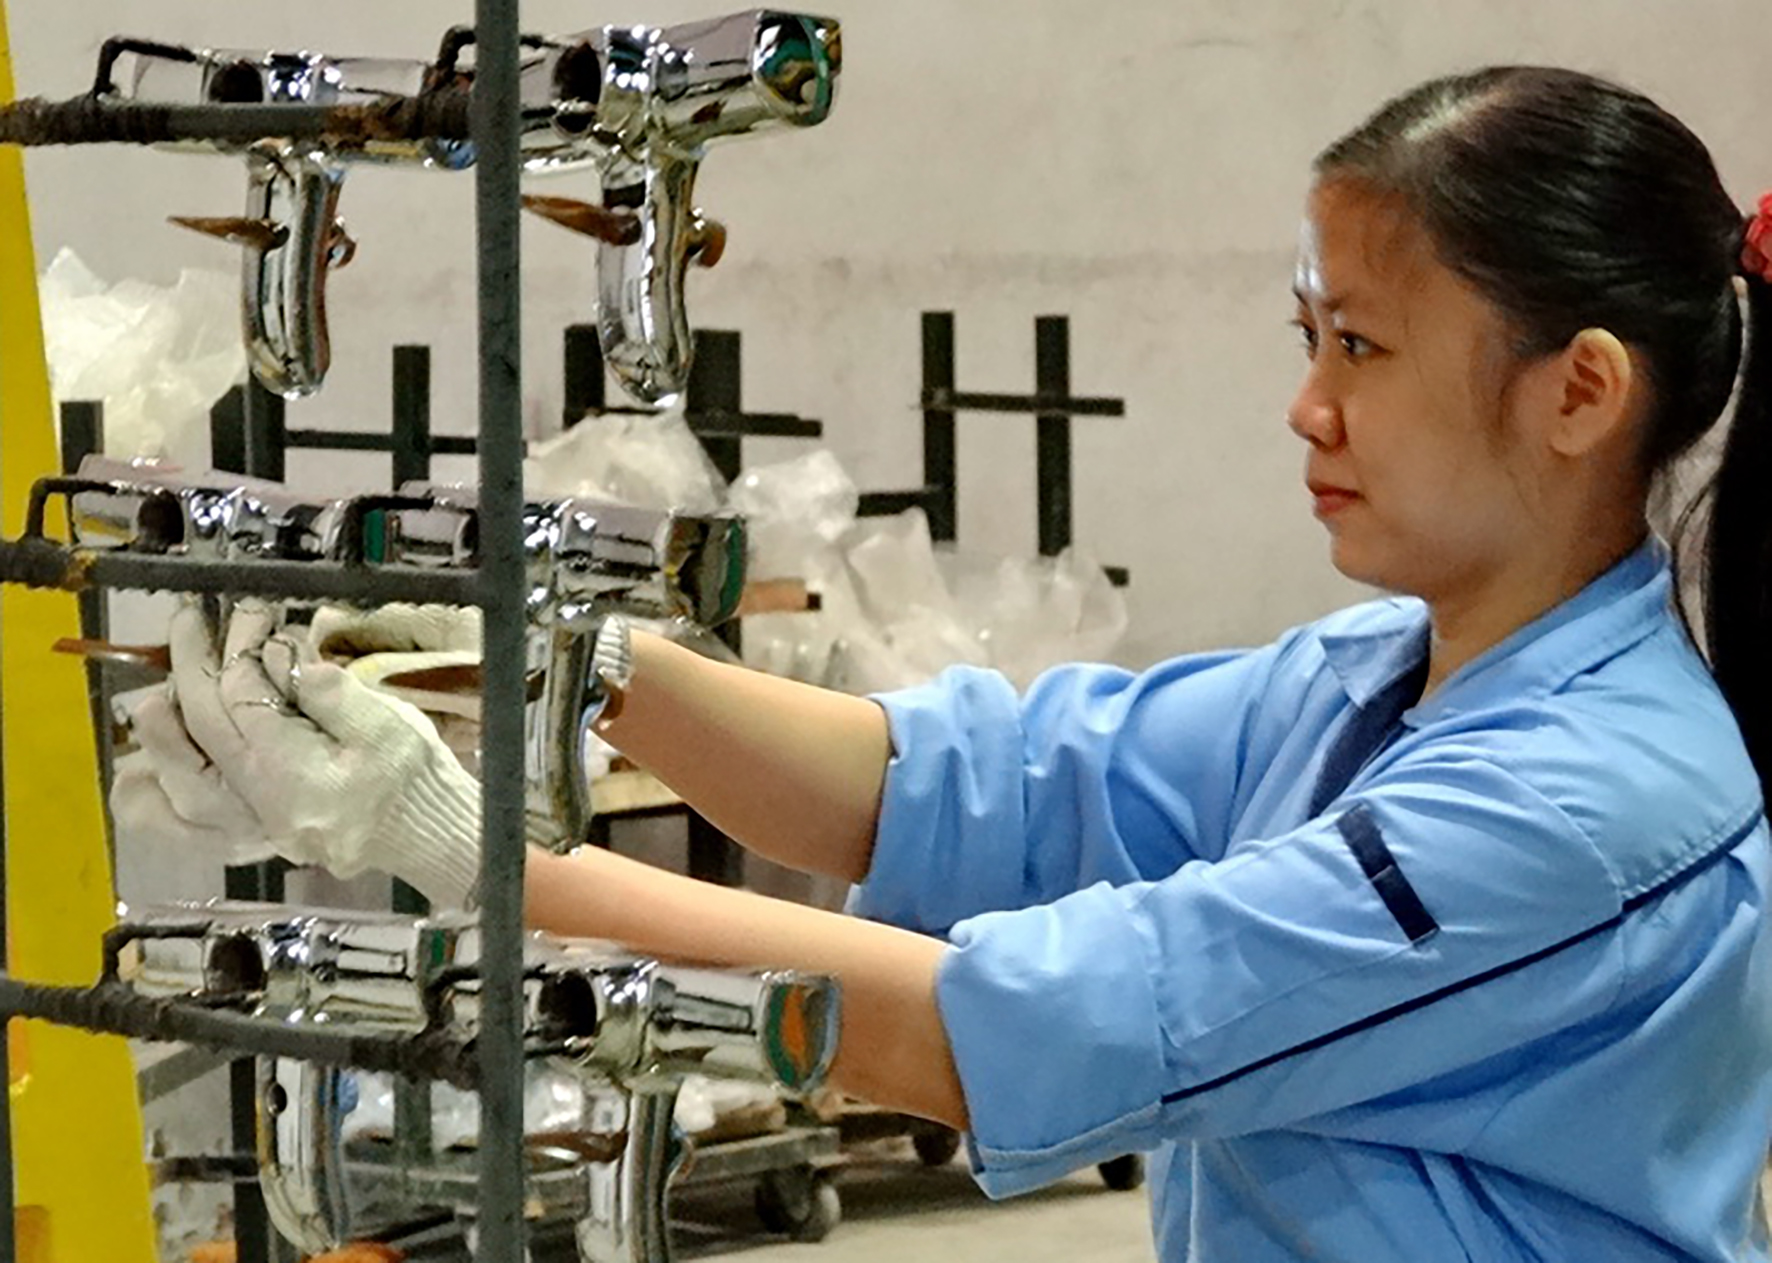 Công ty sen vòi Viglacera hợp tác với Đại học Bách Khoa để phát triển các sản phẩm điều khiển tự động. Ảnh: baoxaydung.com.vn